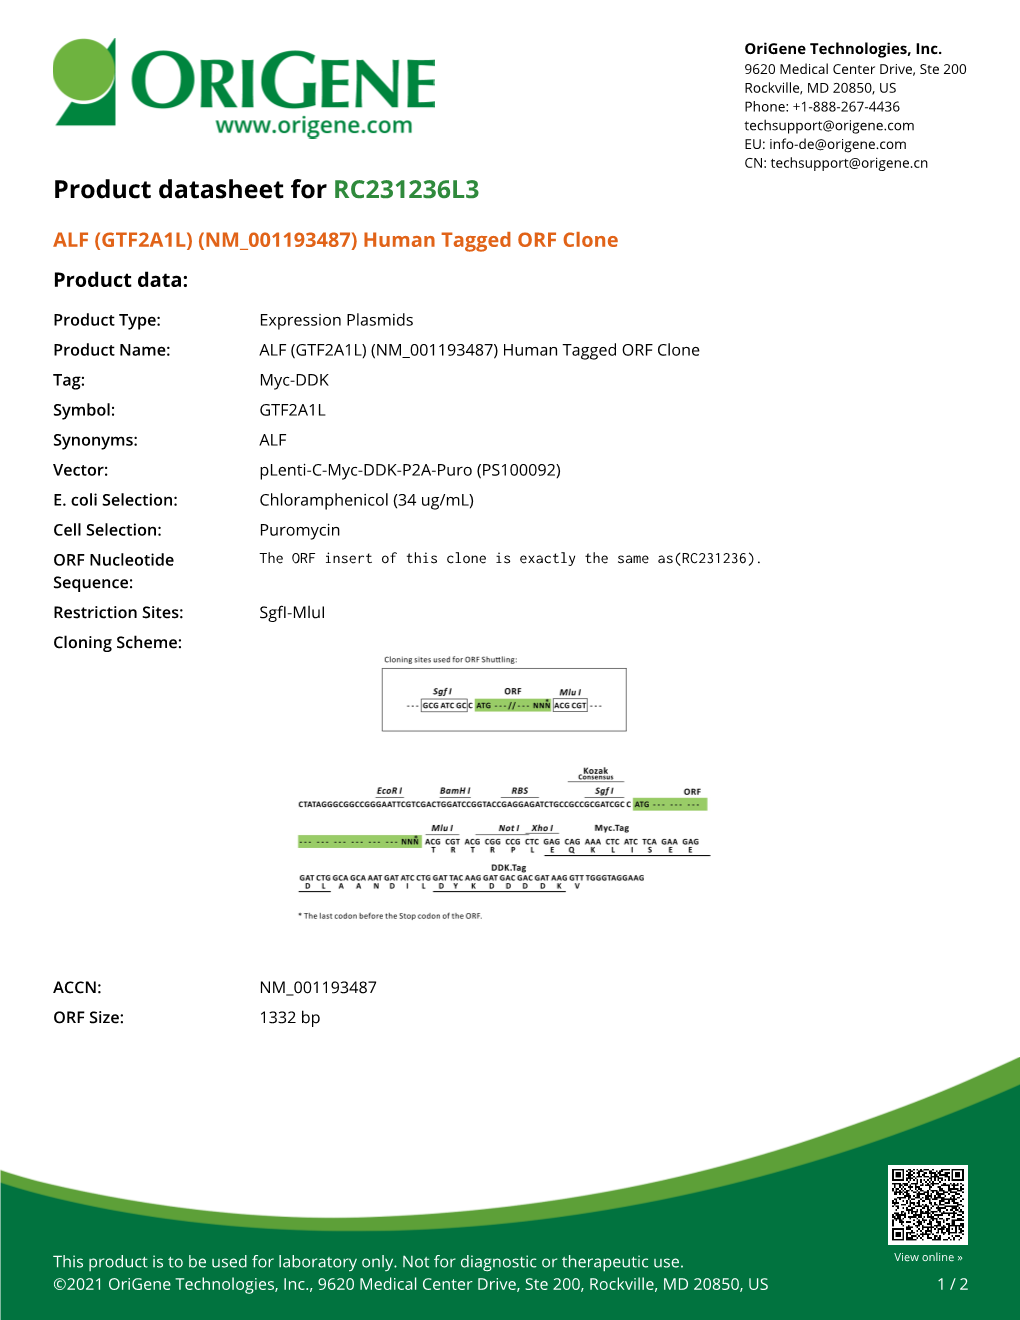 ALF (GTF2A1L) (NM 001193487) Human Tagged ORF Clone Product Data